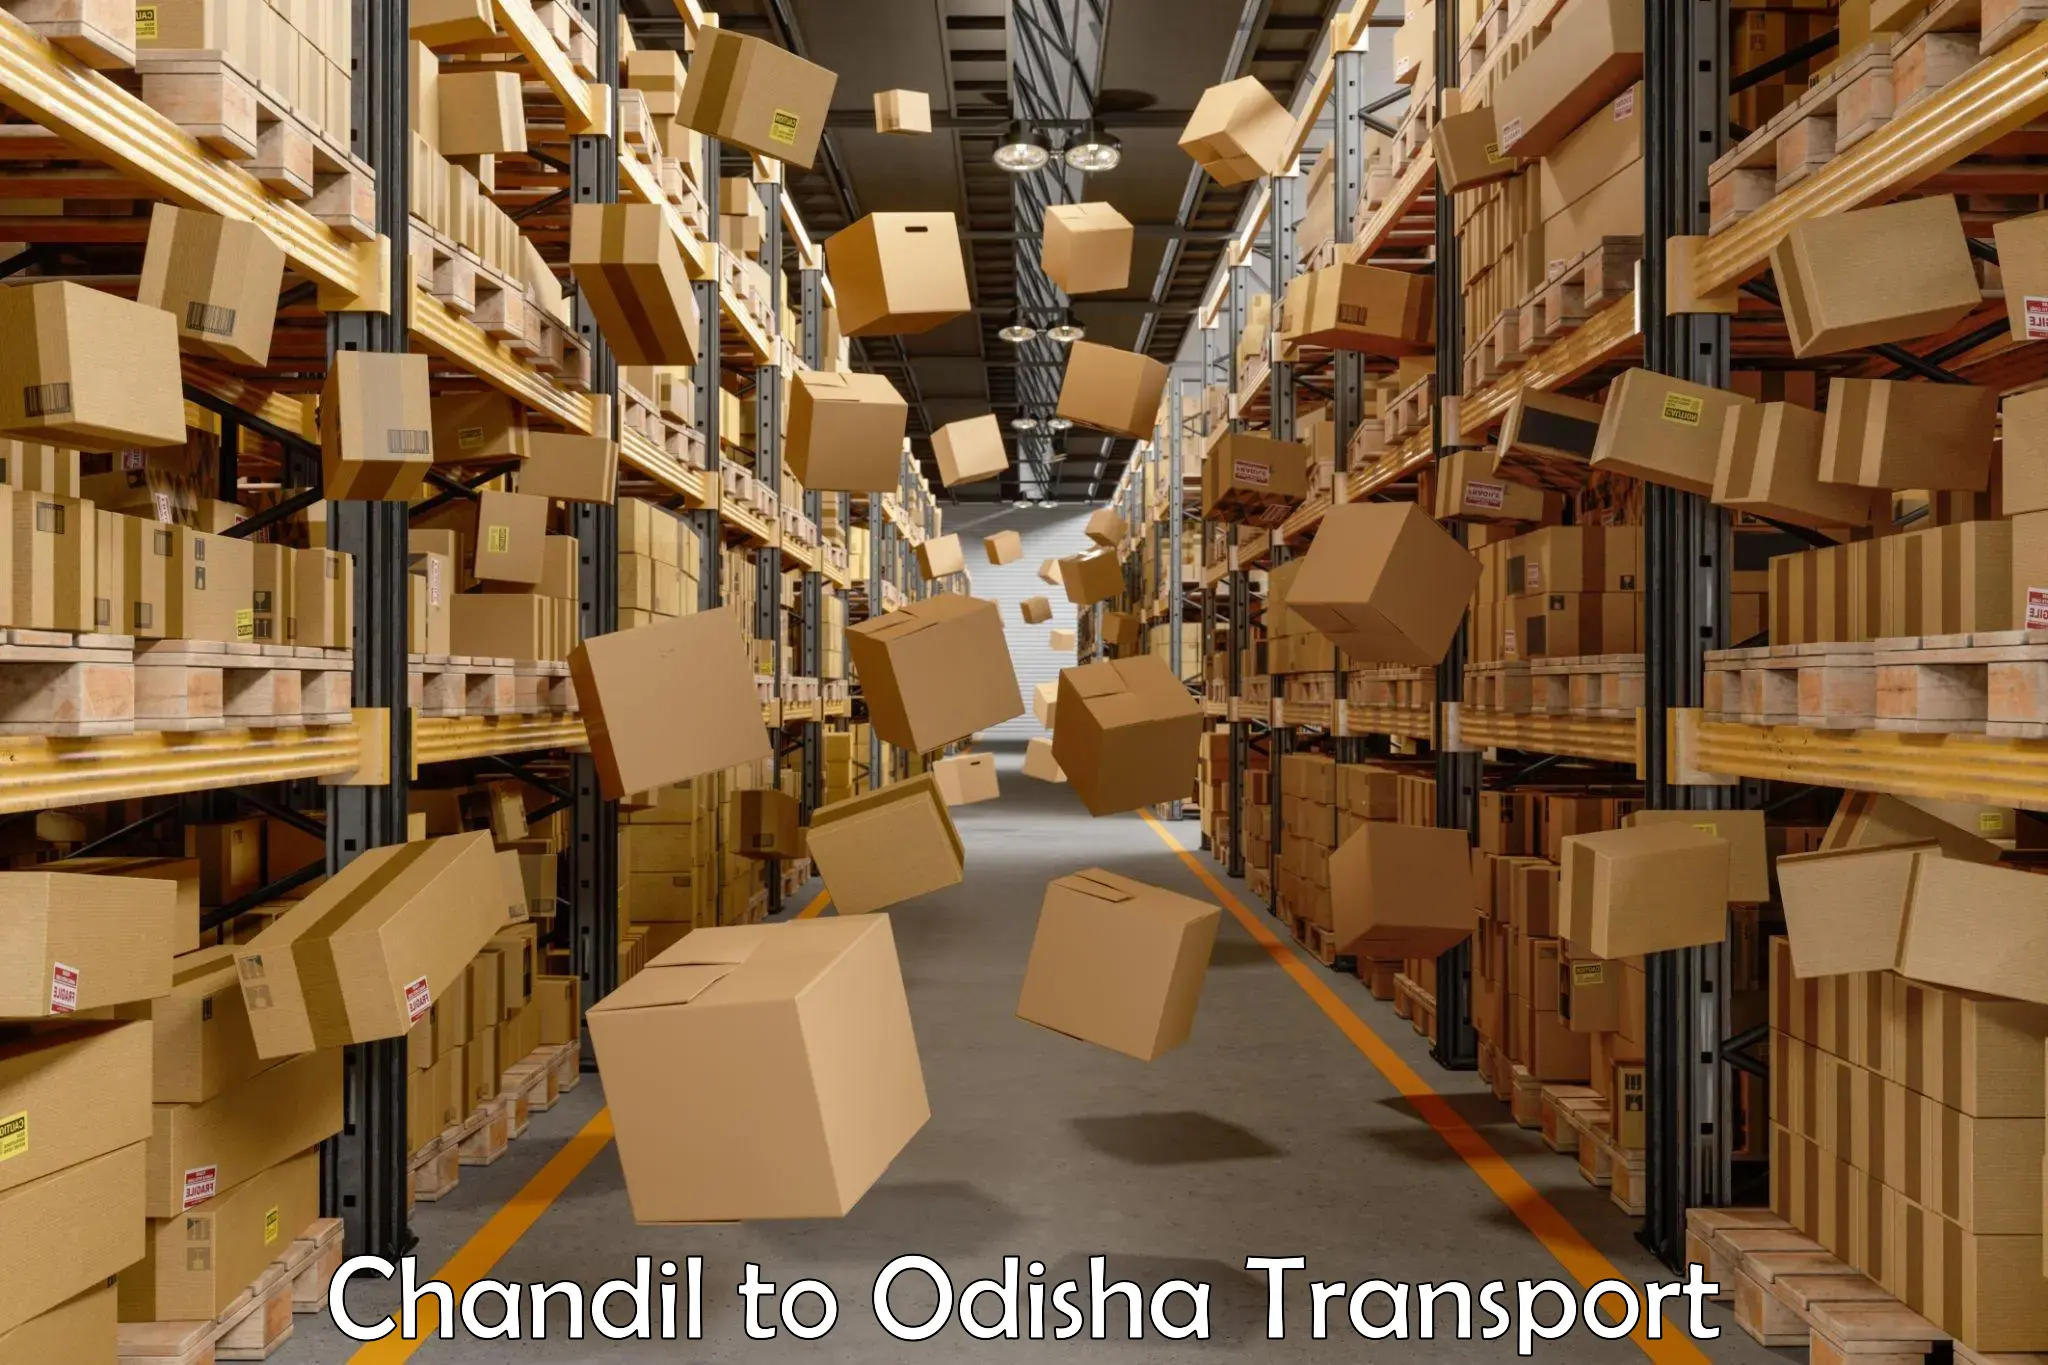 Nearest transport service Chandil to Kuchinda